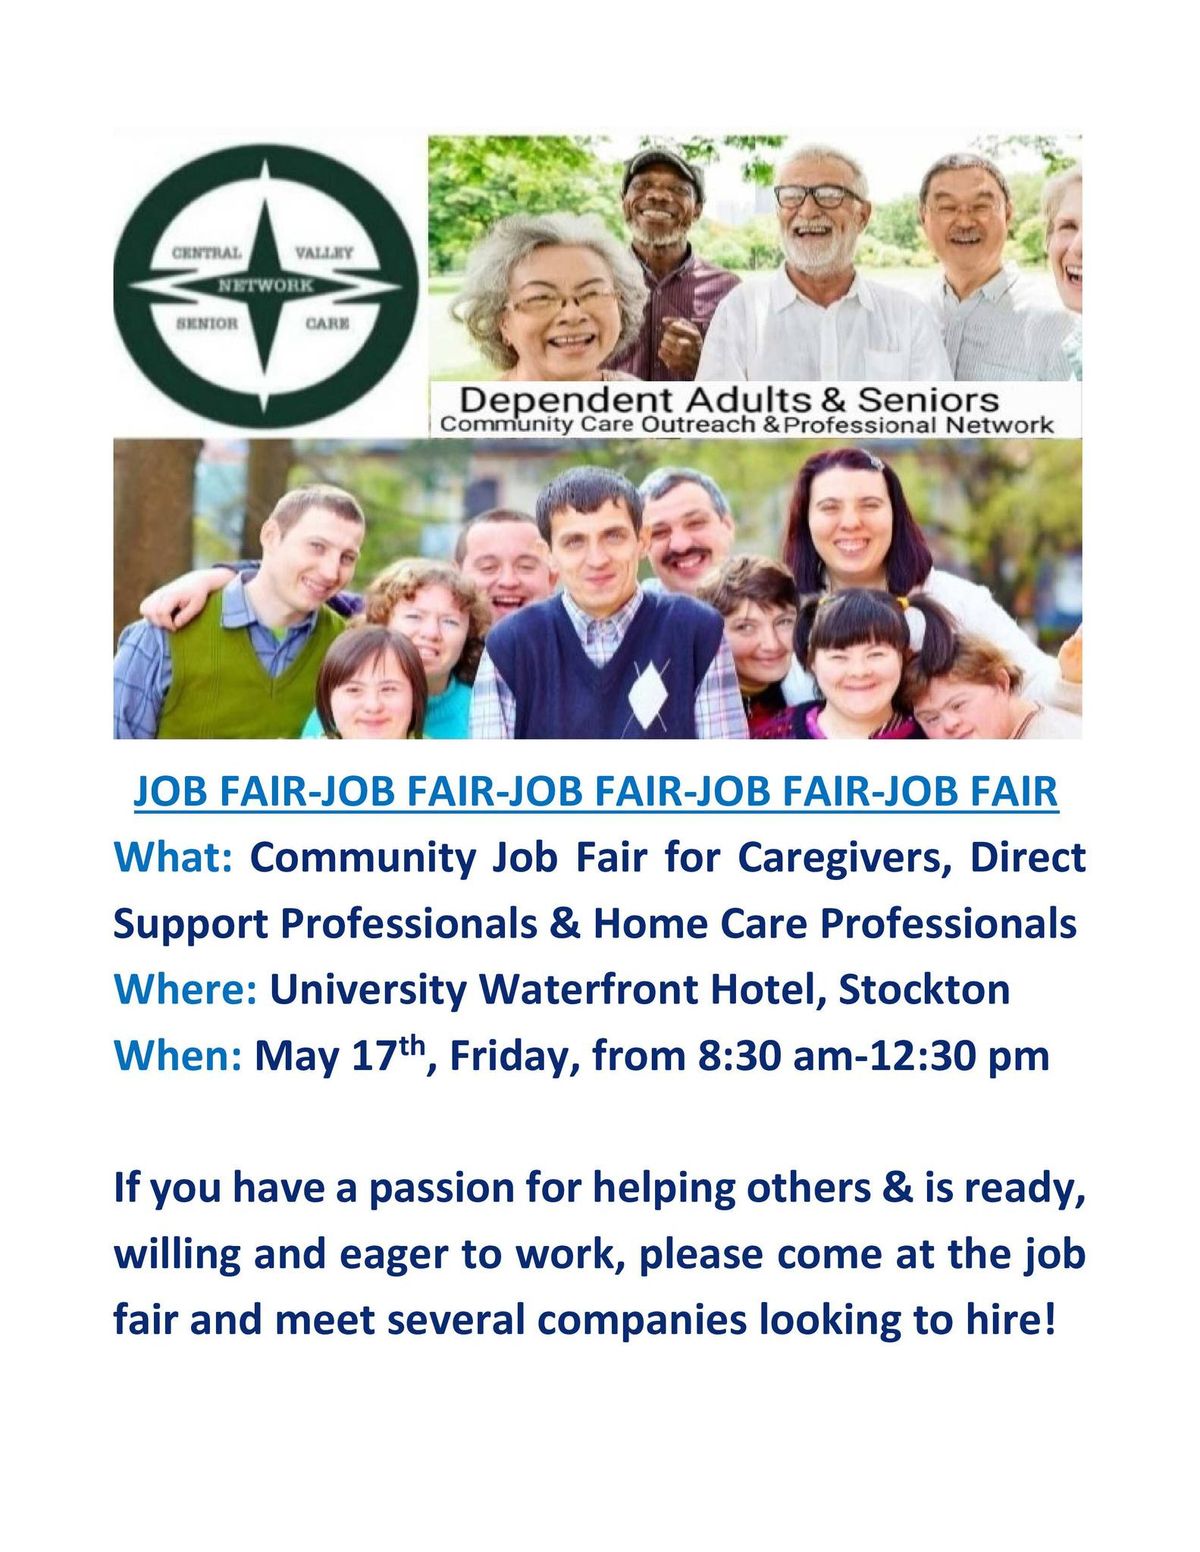 CVSCN Events Job Fair (Caregivers-Direct Support Professionals-Home Care)